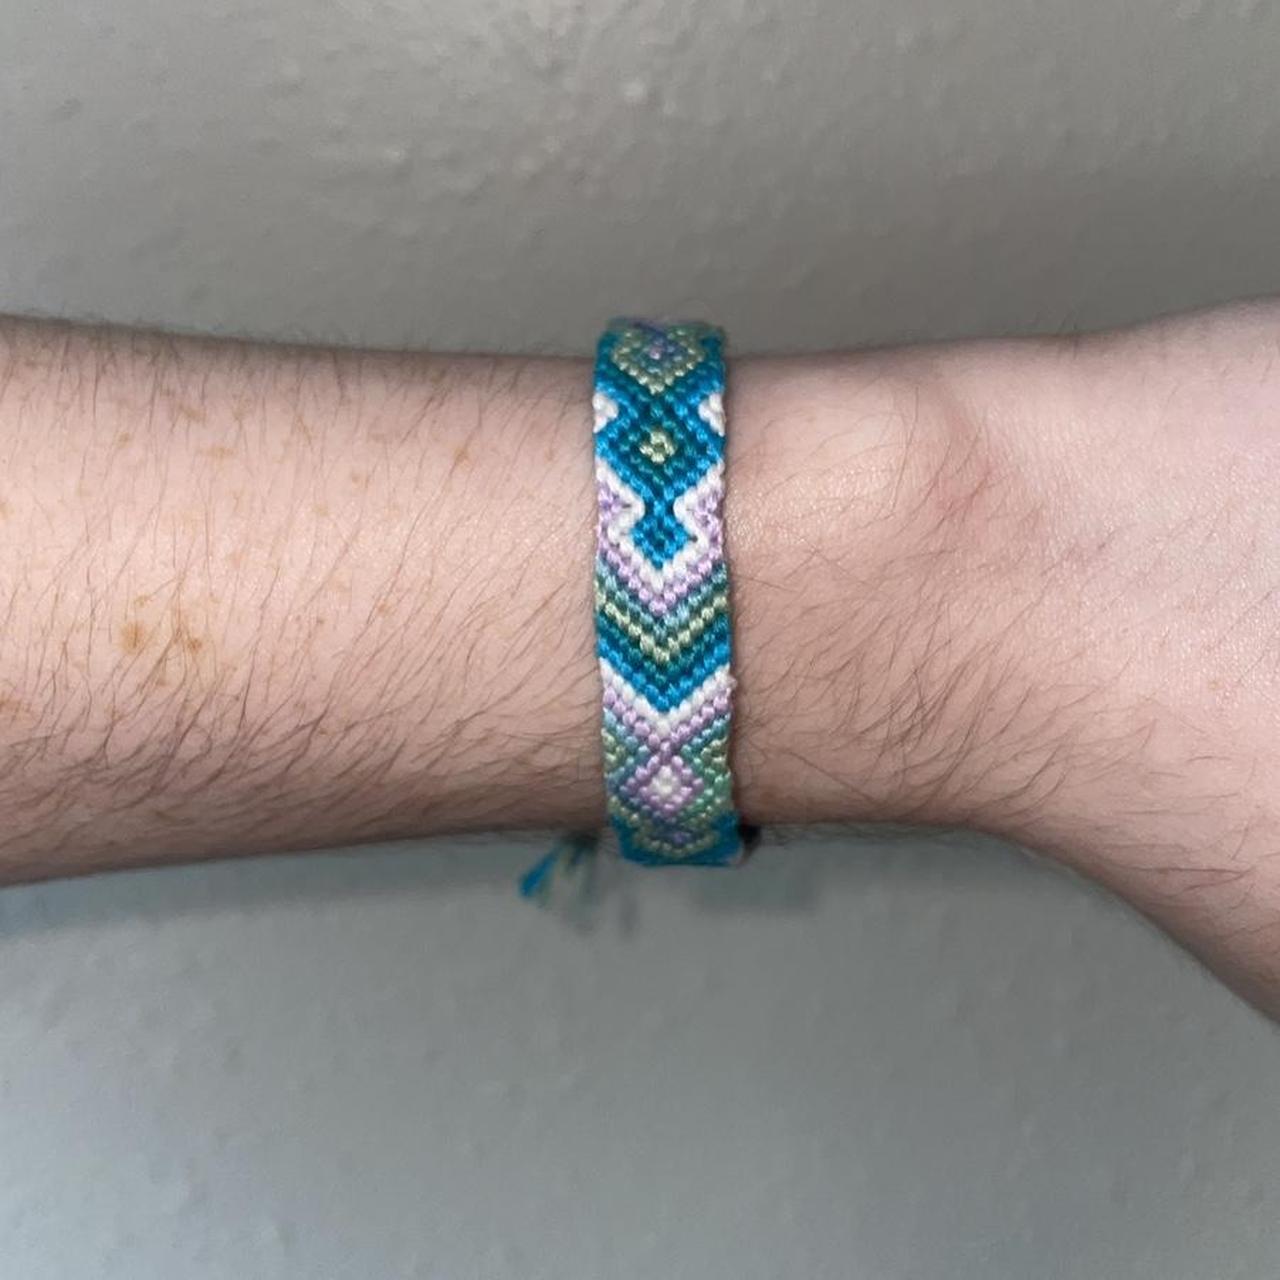 Timothée Chalamet inspired adjustable bracelet set - Depop